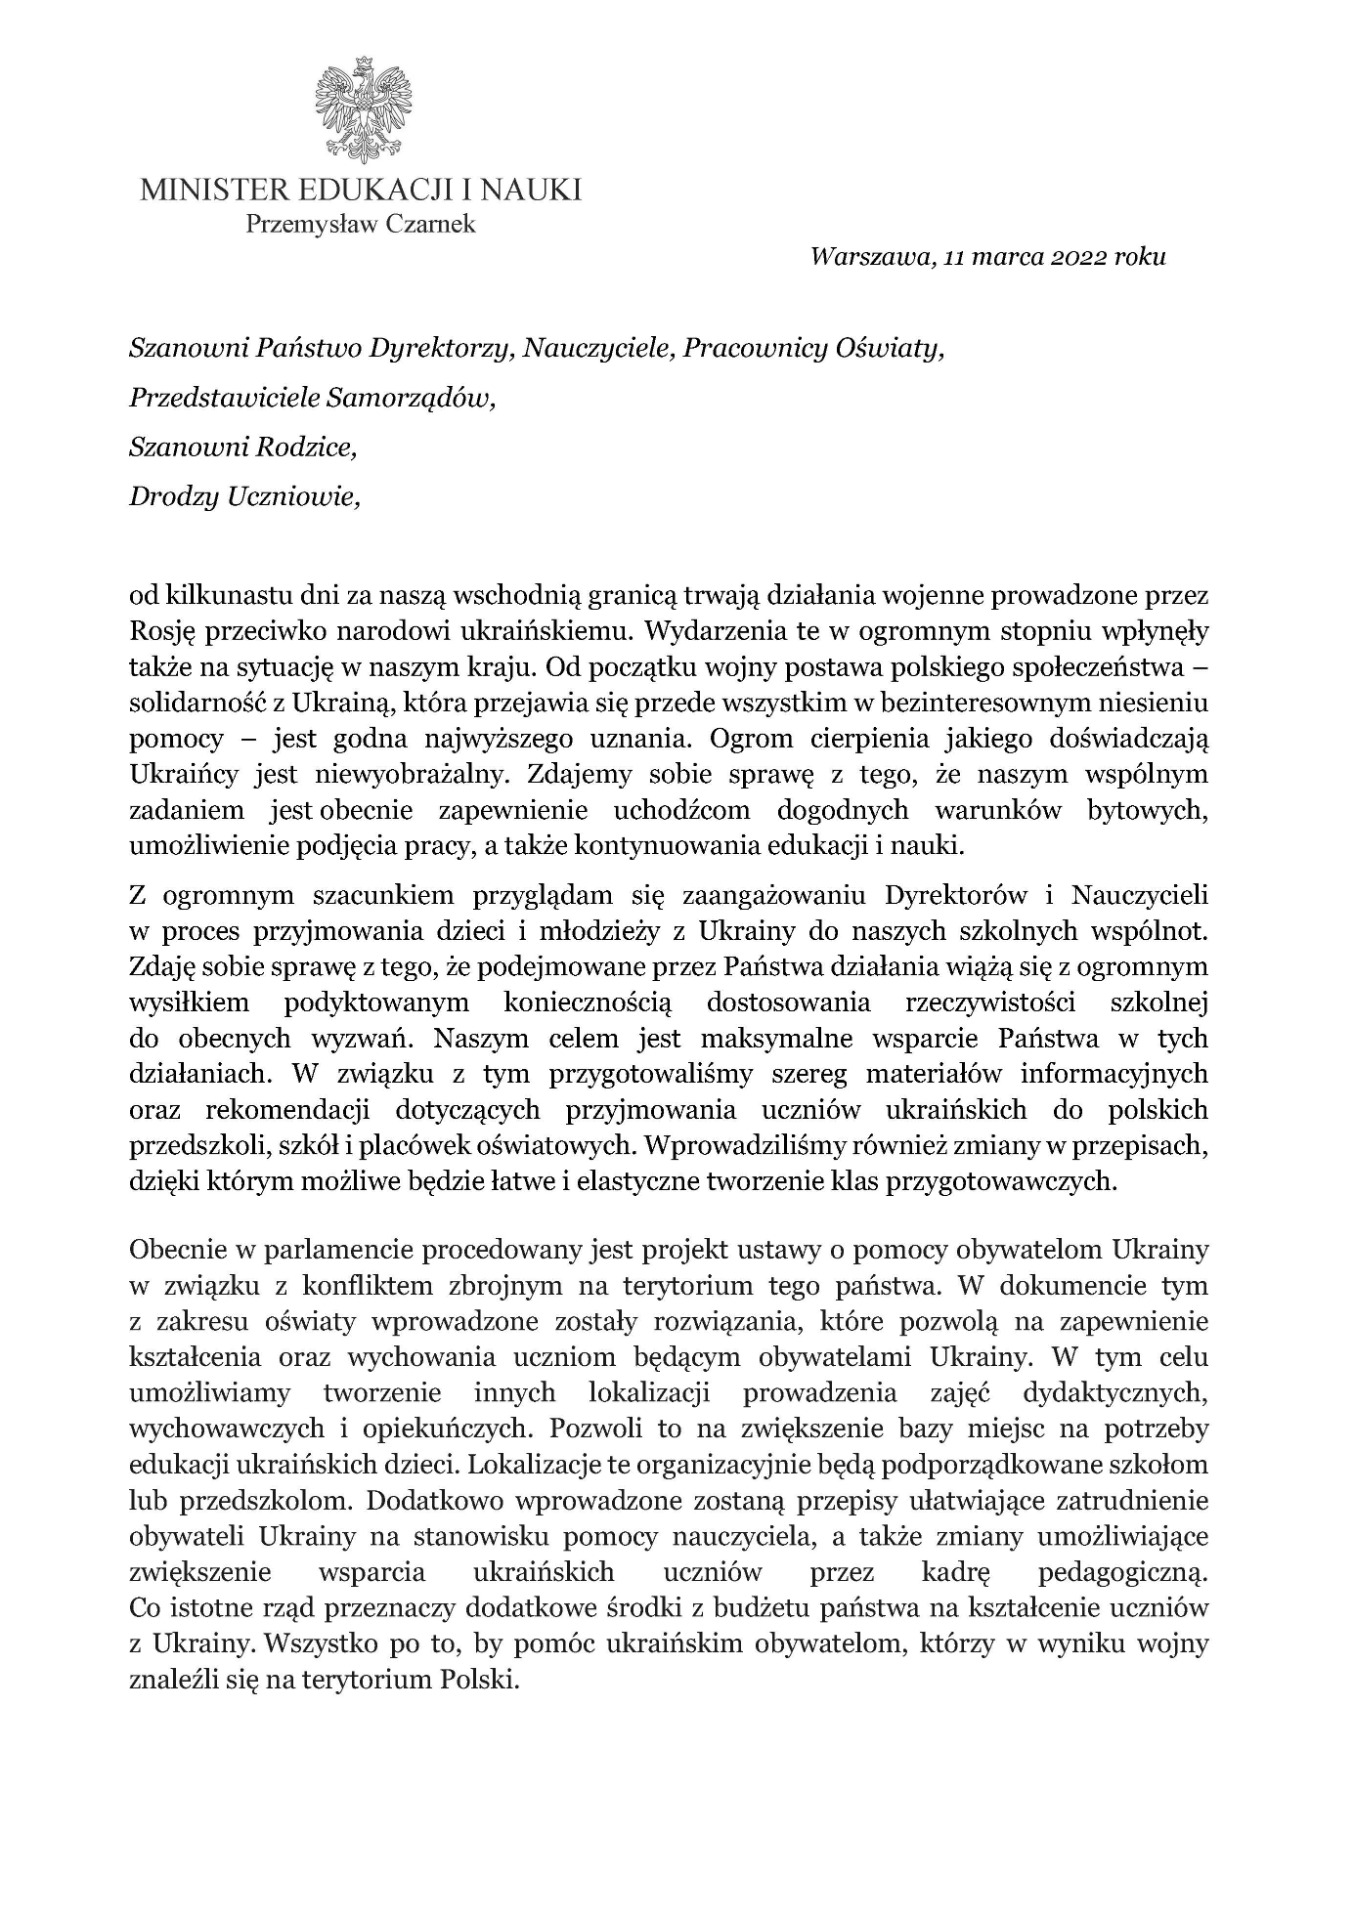 List Ministra Edukacji i Nauki dotyczący sytuacji na Ukrainie - Obrazek 1